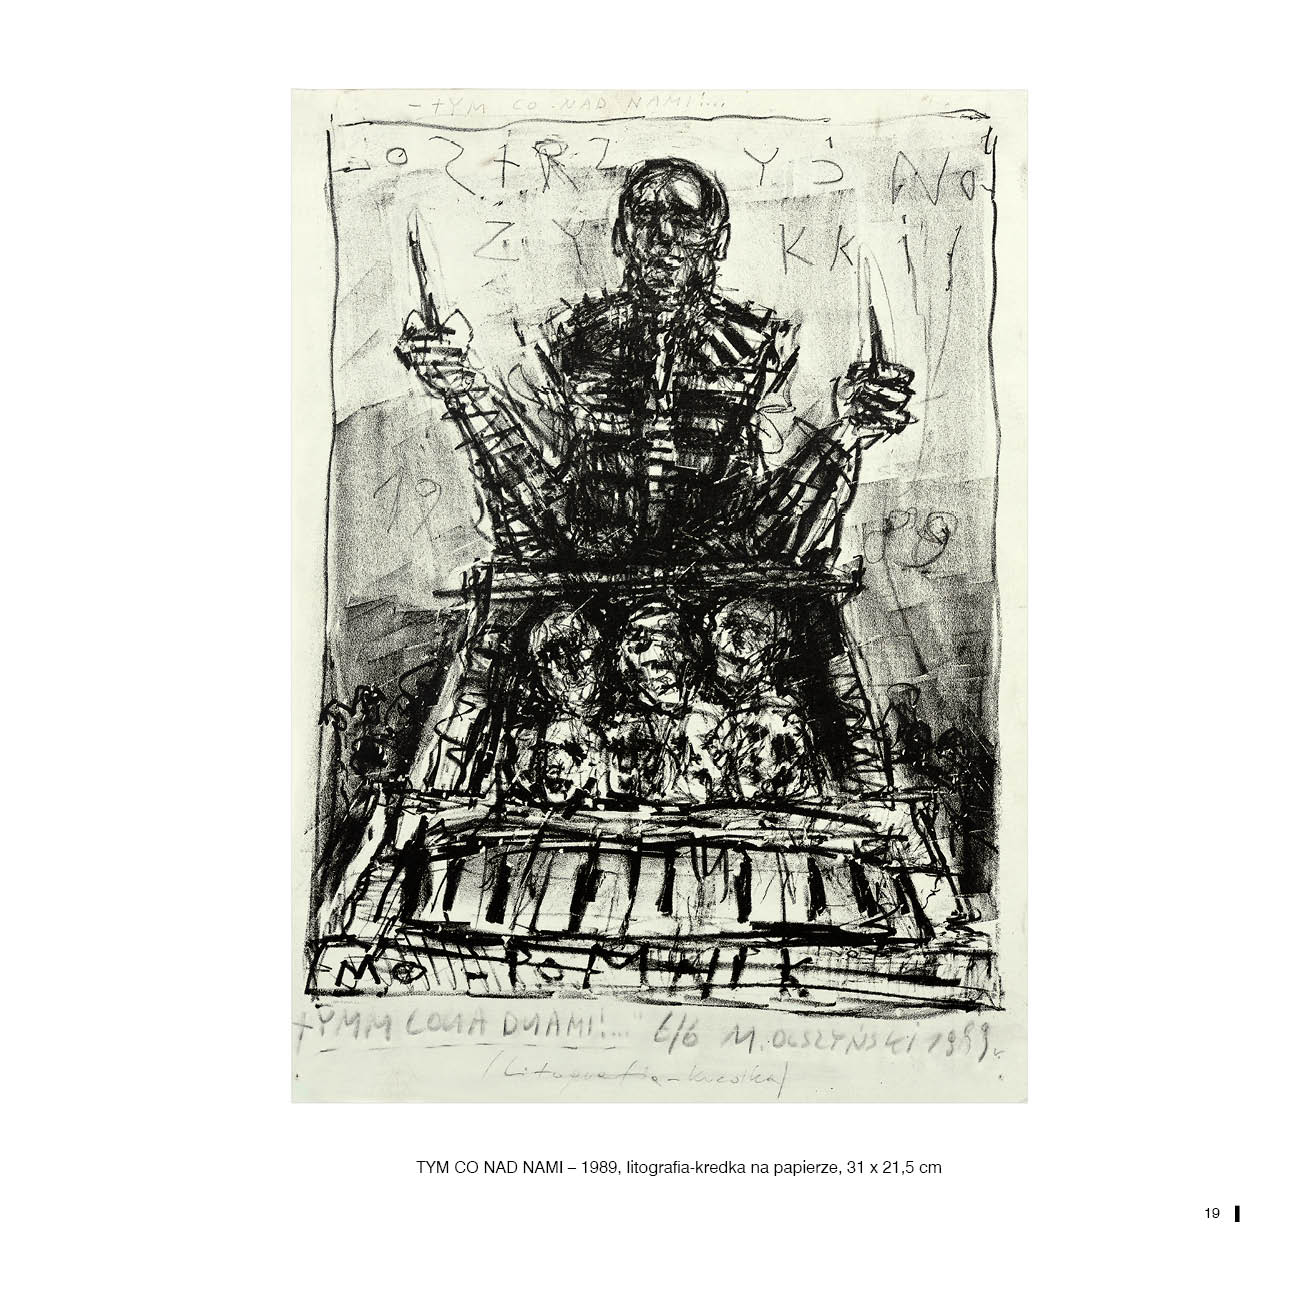 TYM CO NAD NAMI – 1989, litografia-kredka na papierze, 31 x 21,5 cm